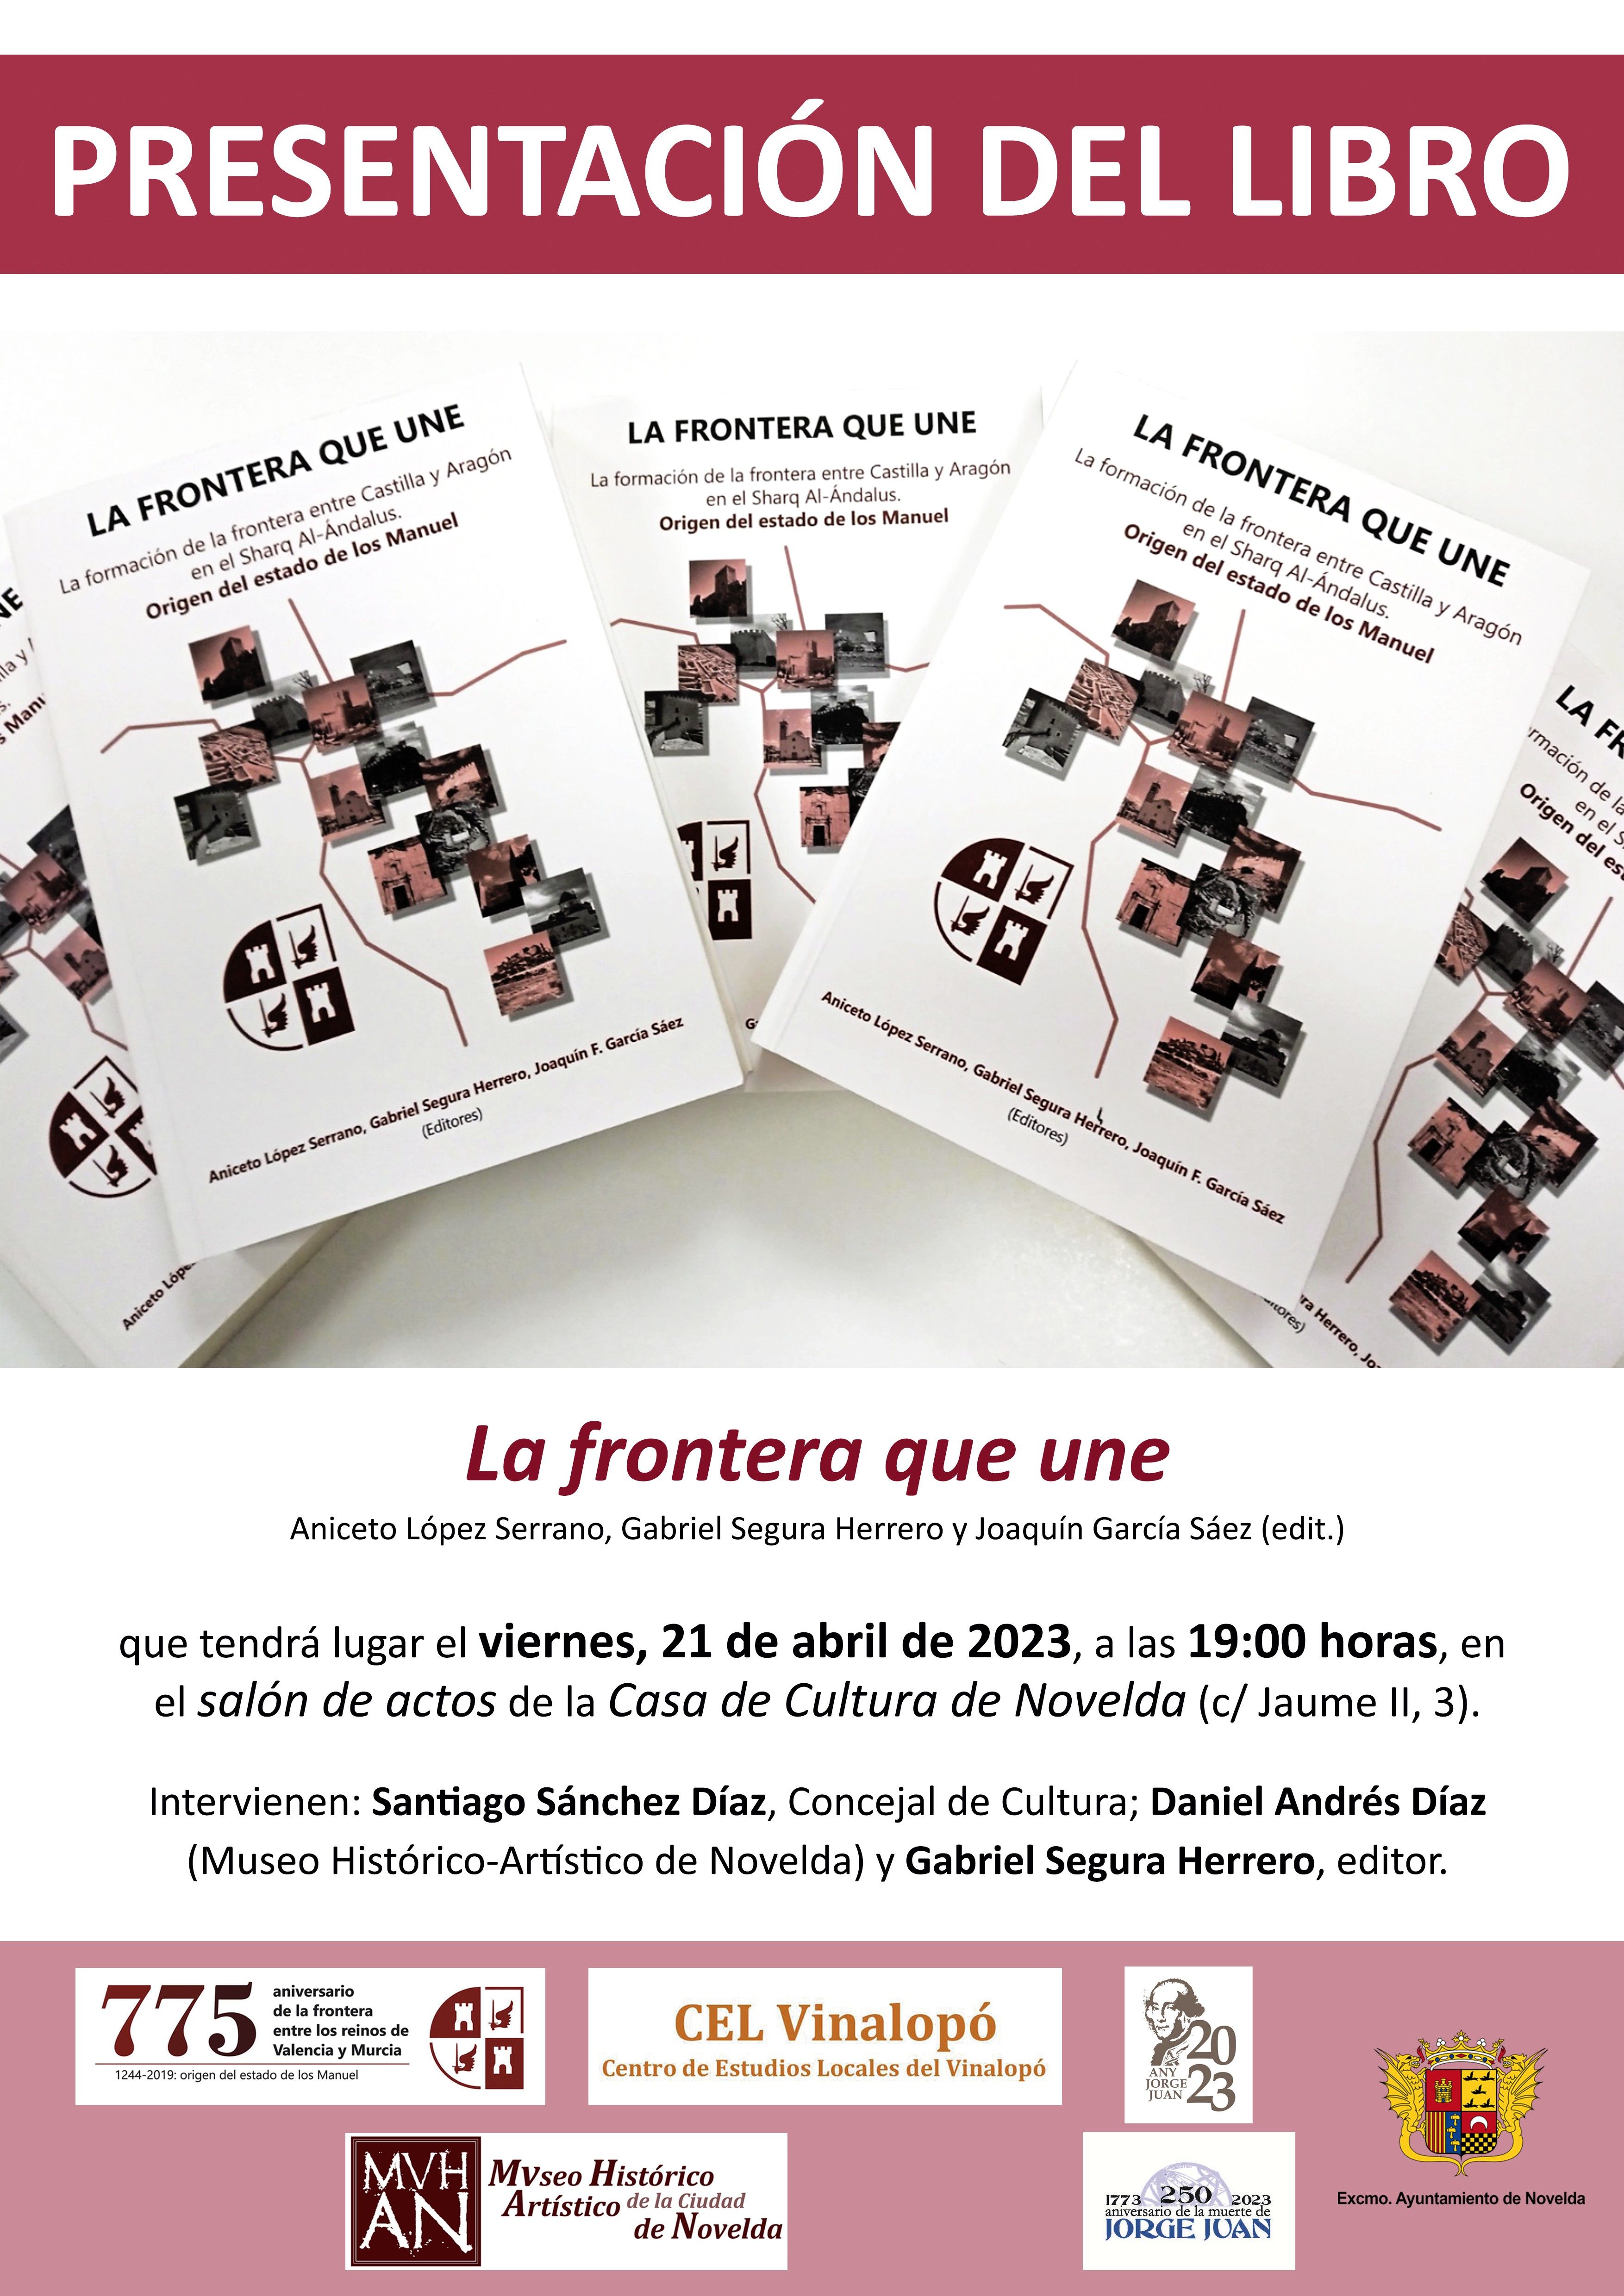 Ayuntamiento de Novelda Cartel-Presentac-Libro-775-Aniv-NOVELDA Presentació del llibre "La frontera que une" 